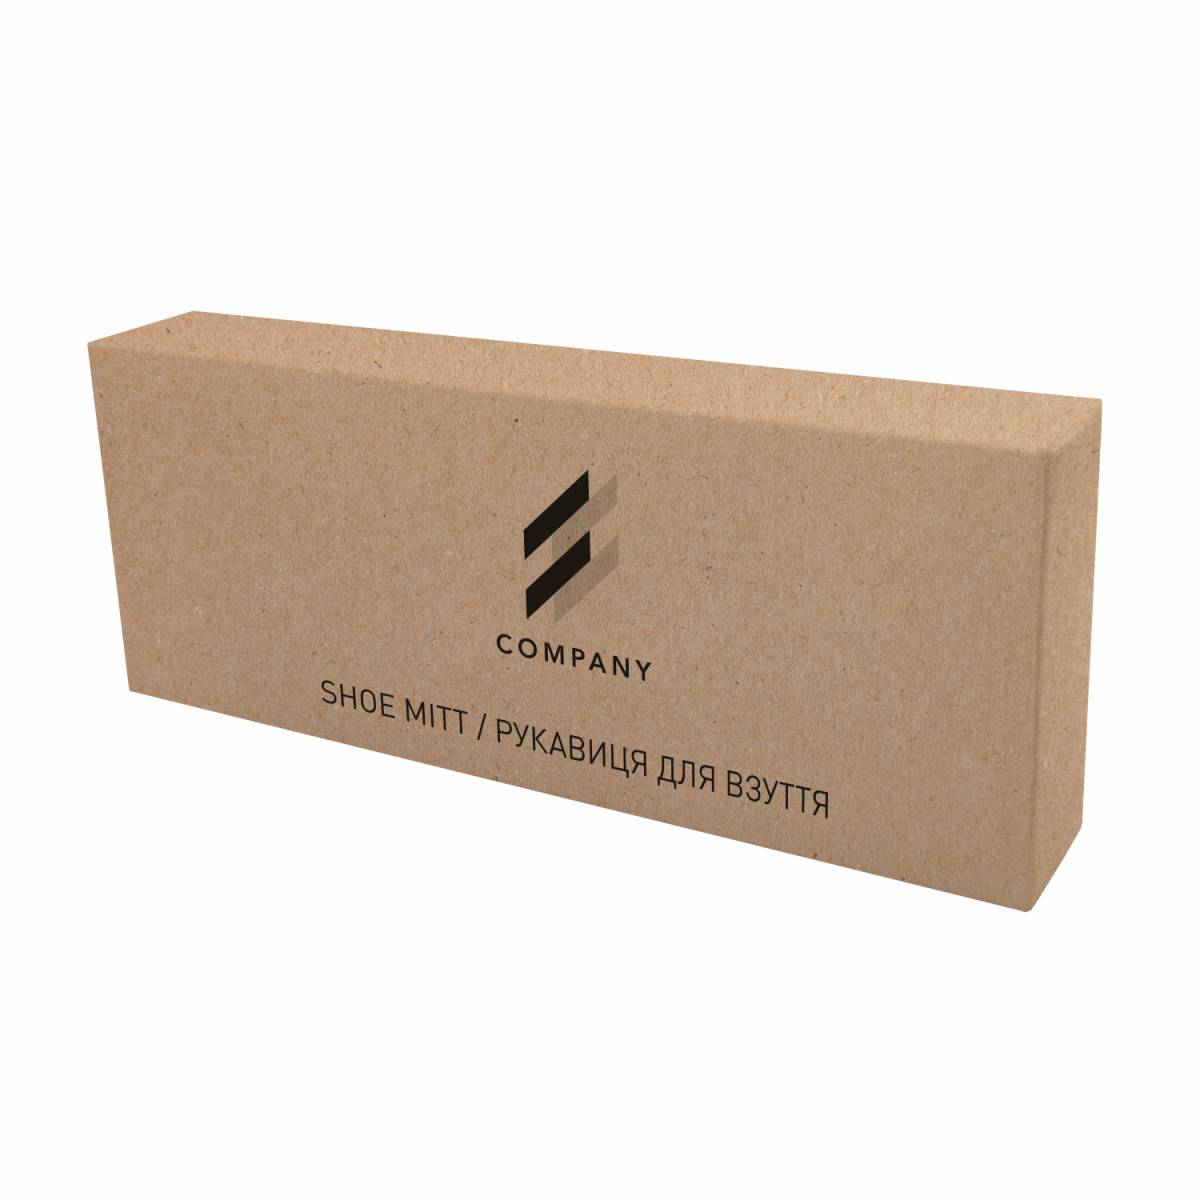 Рукавиця для полірування взуття в коробочці з крафтового картону з логотипом SM1-С HSG